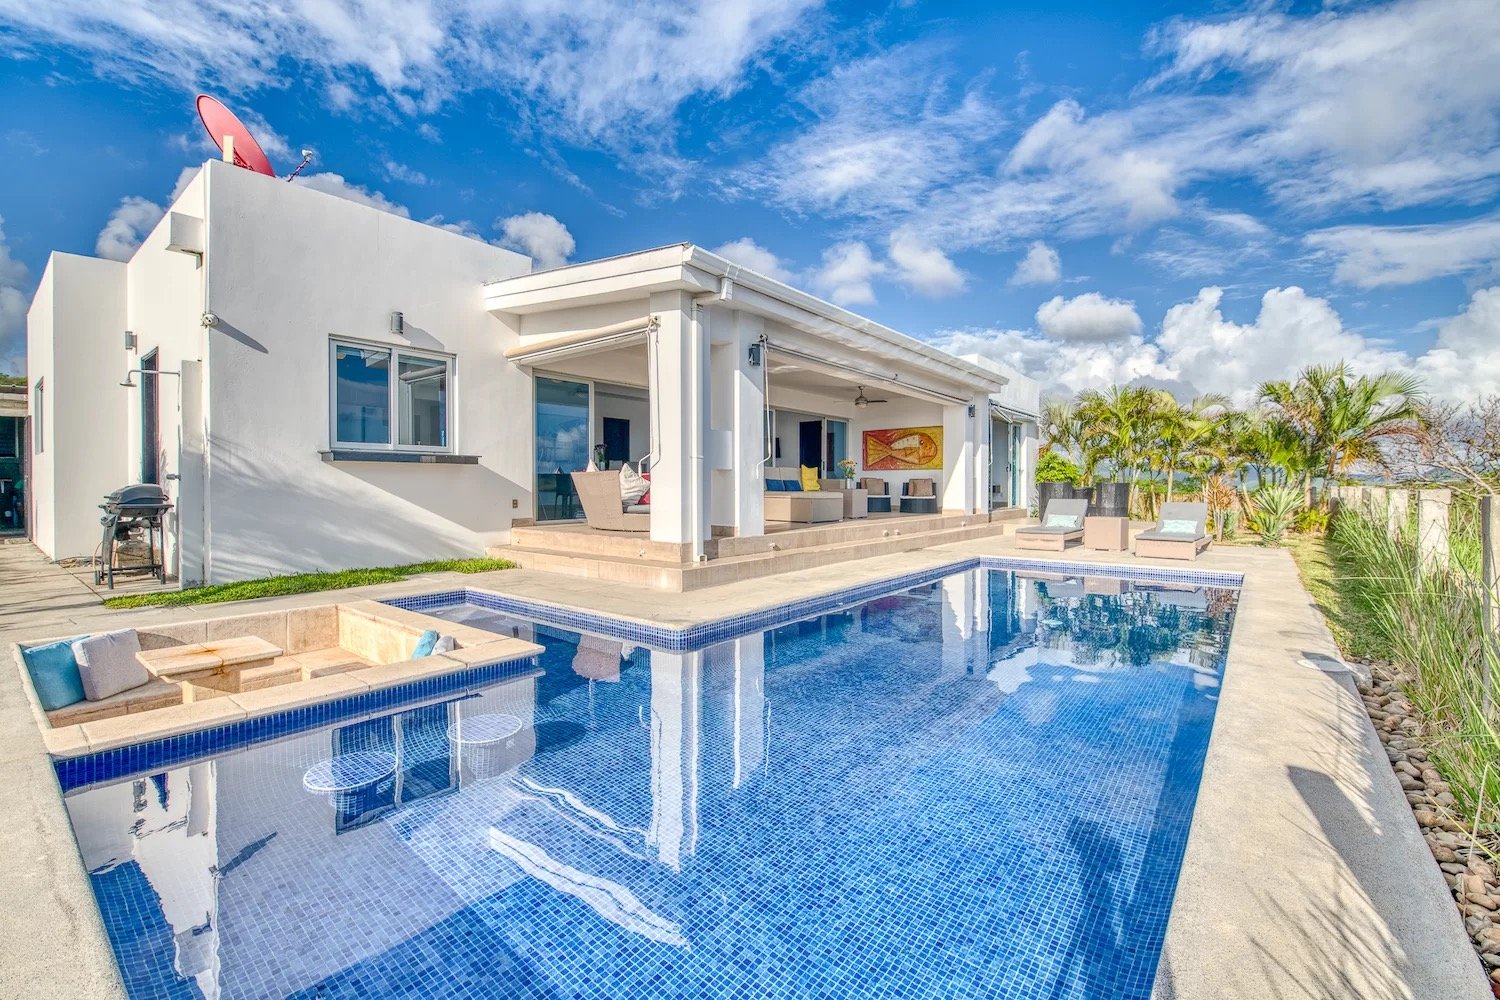 Luxury home for sale San Juan Del Sur Nicaragua Real estate property 6.jpg.jpeg